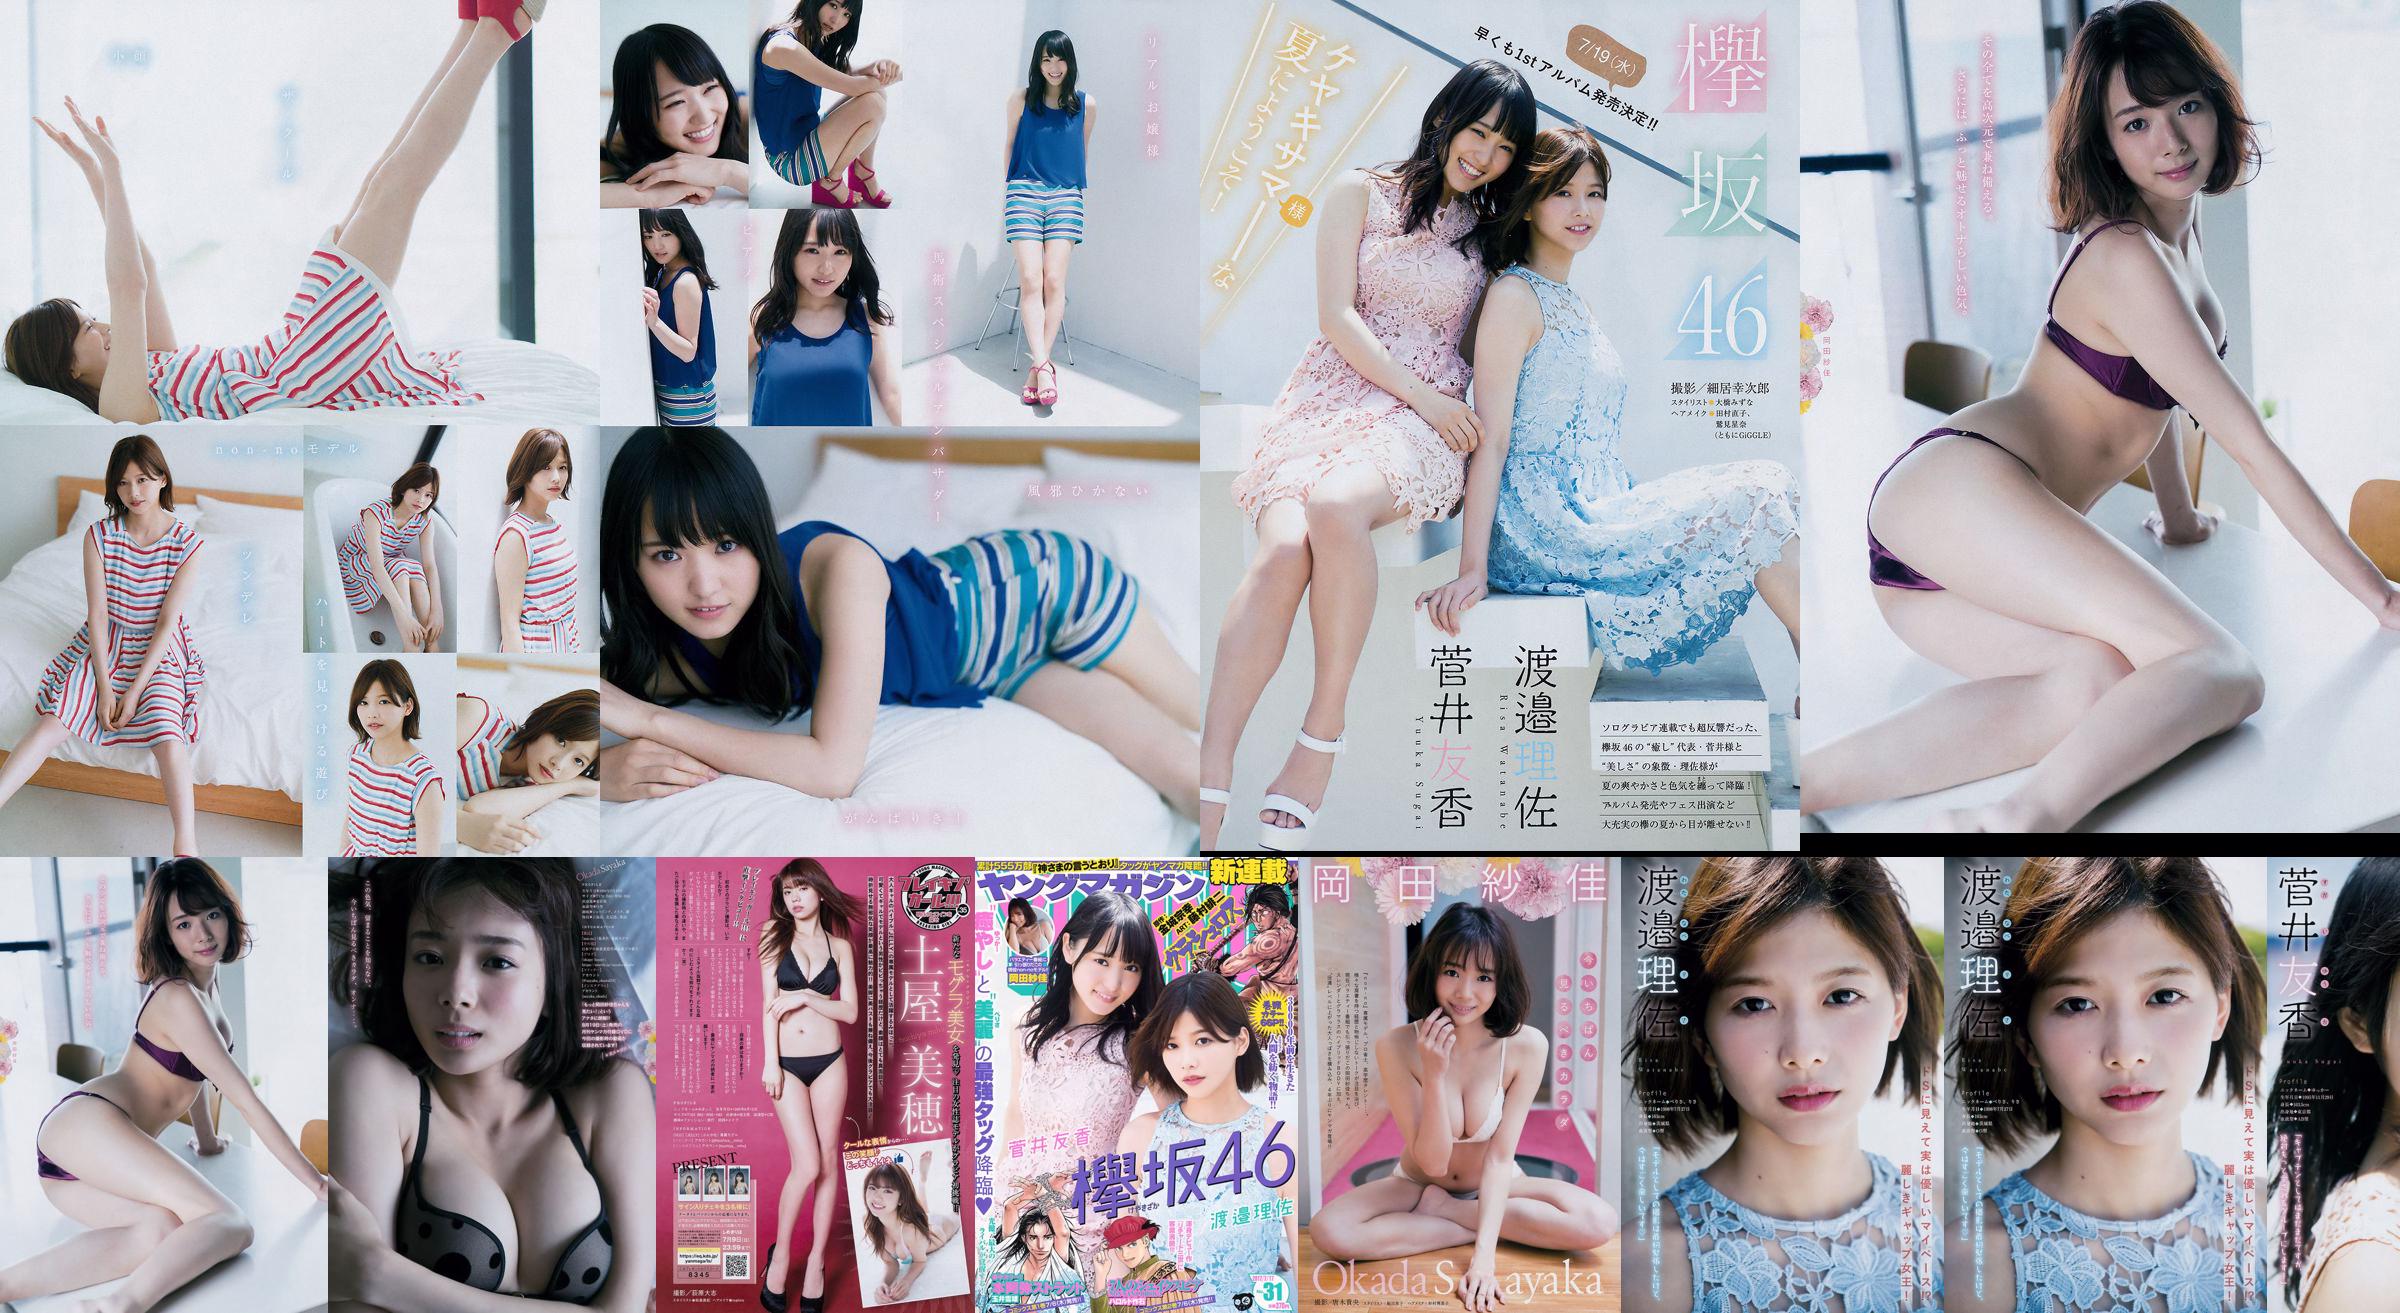 [Young Magazine] Watanabe Risa, Sugai Yuka, Okada Saika 2017 No.31 Photo Magazine No.c598b2 หน้า 2